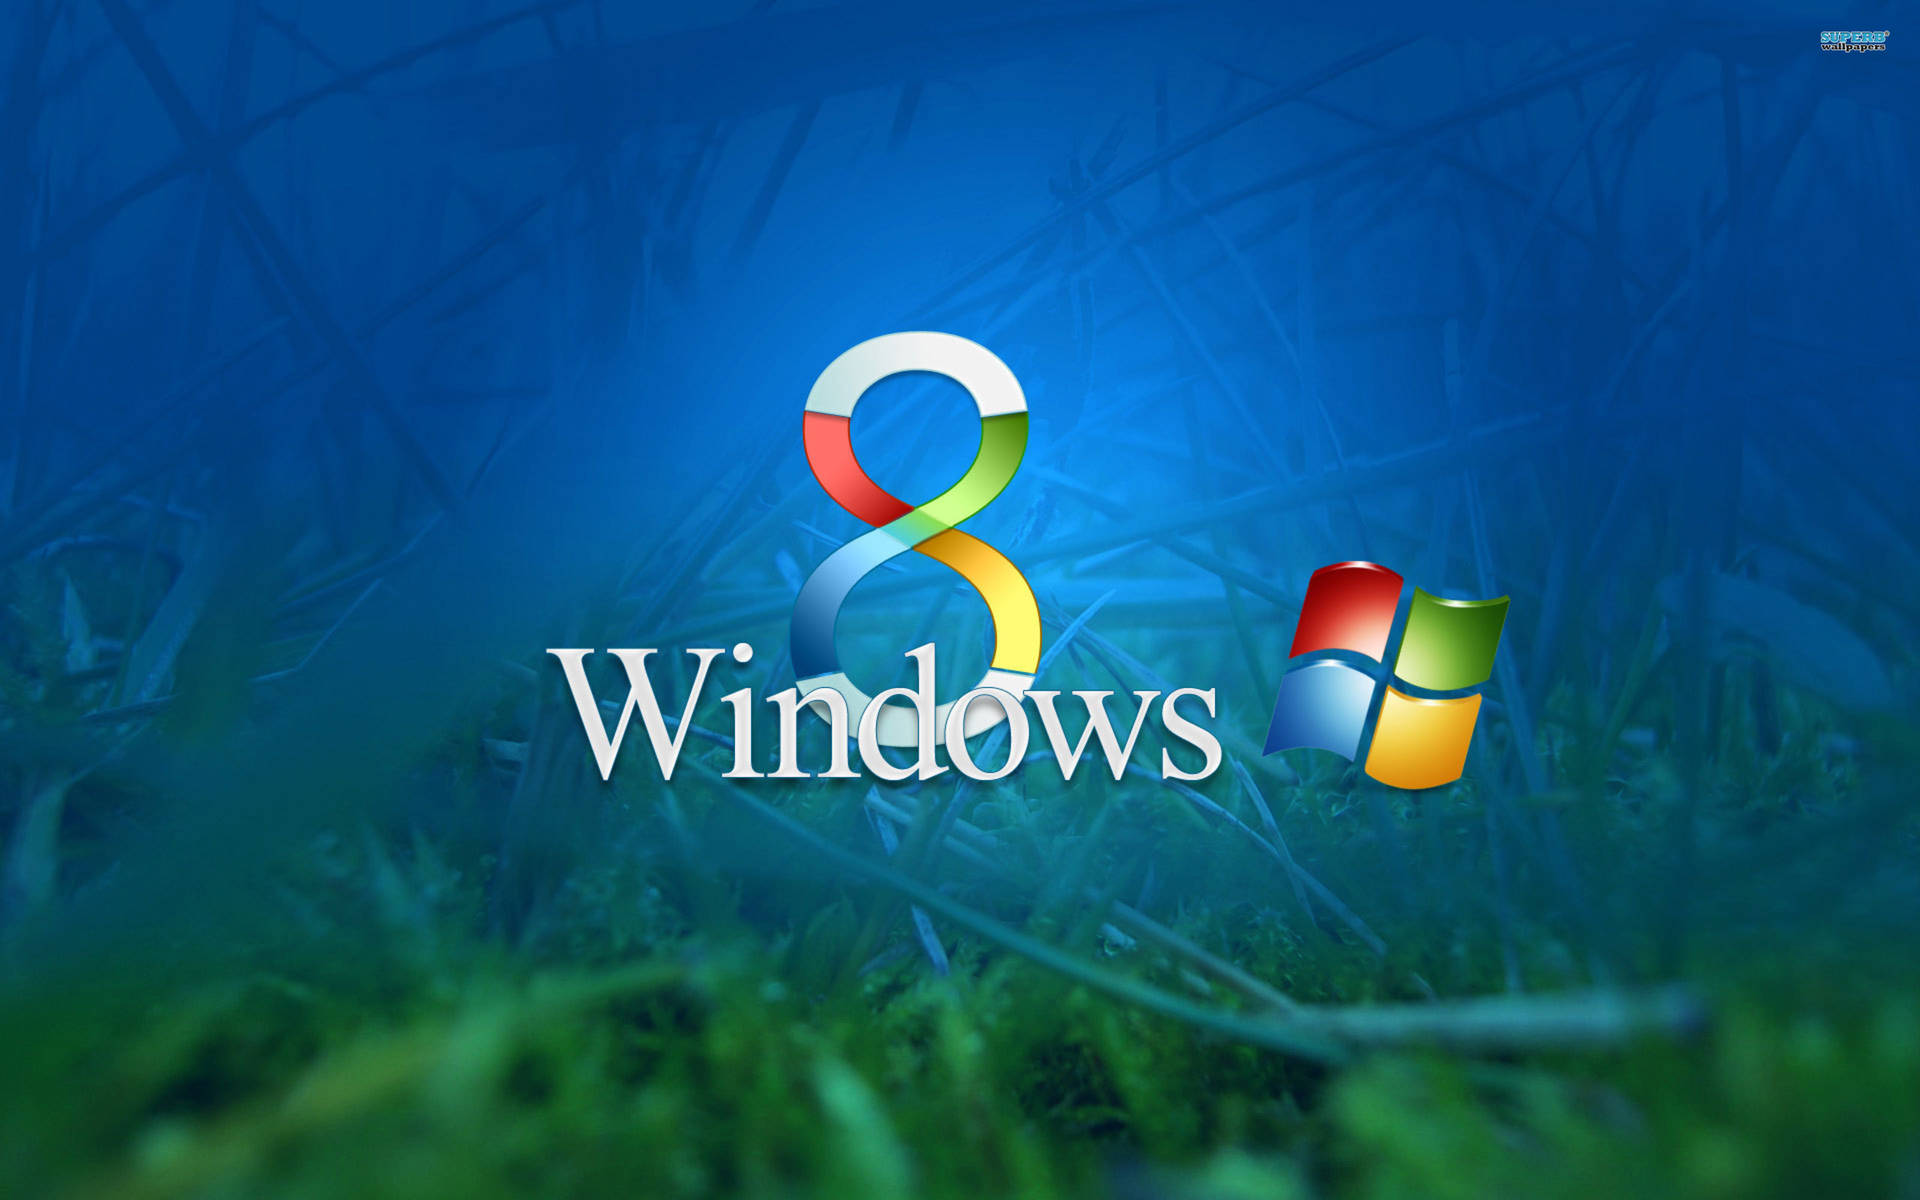 Windows8 Grassy Und Blauer Hintergrund Wallpaper